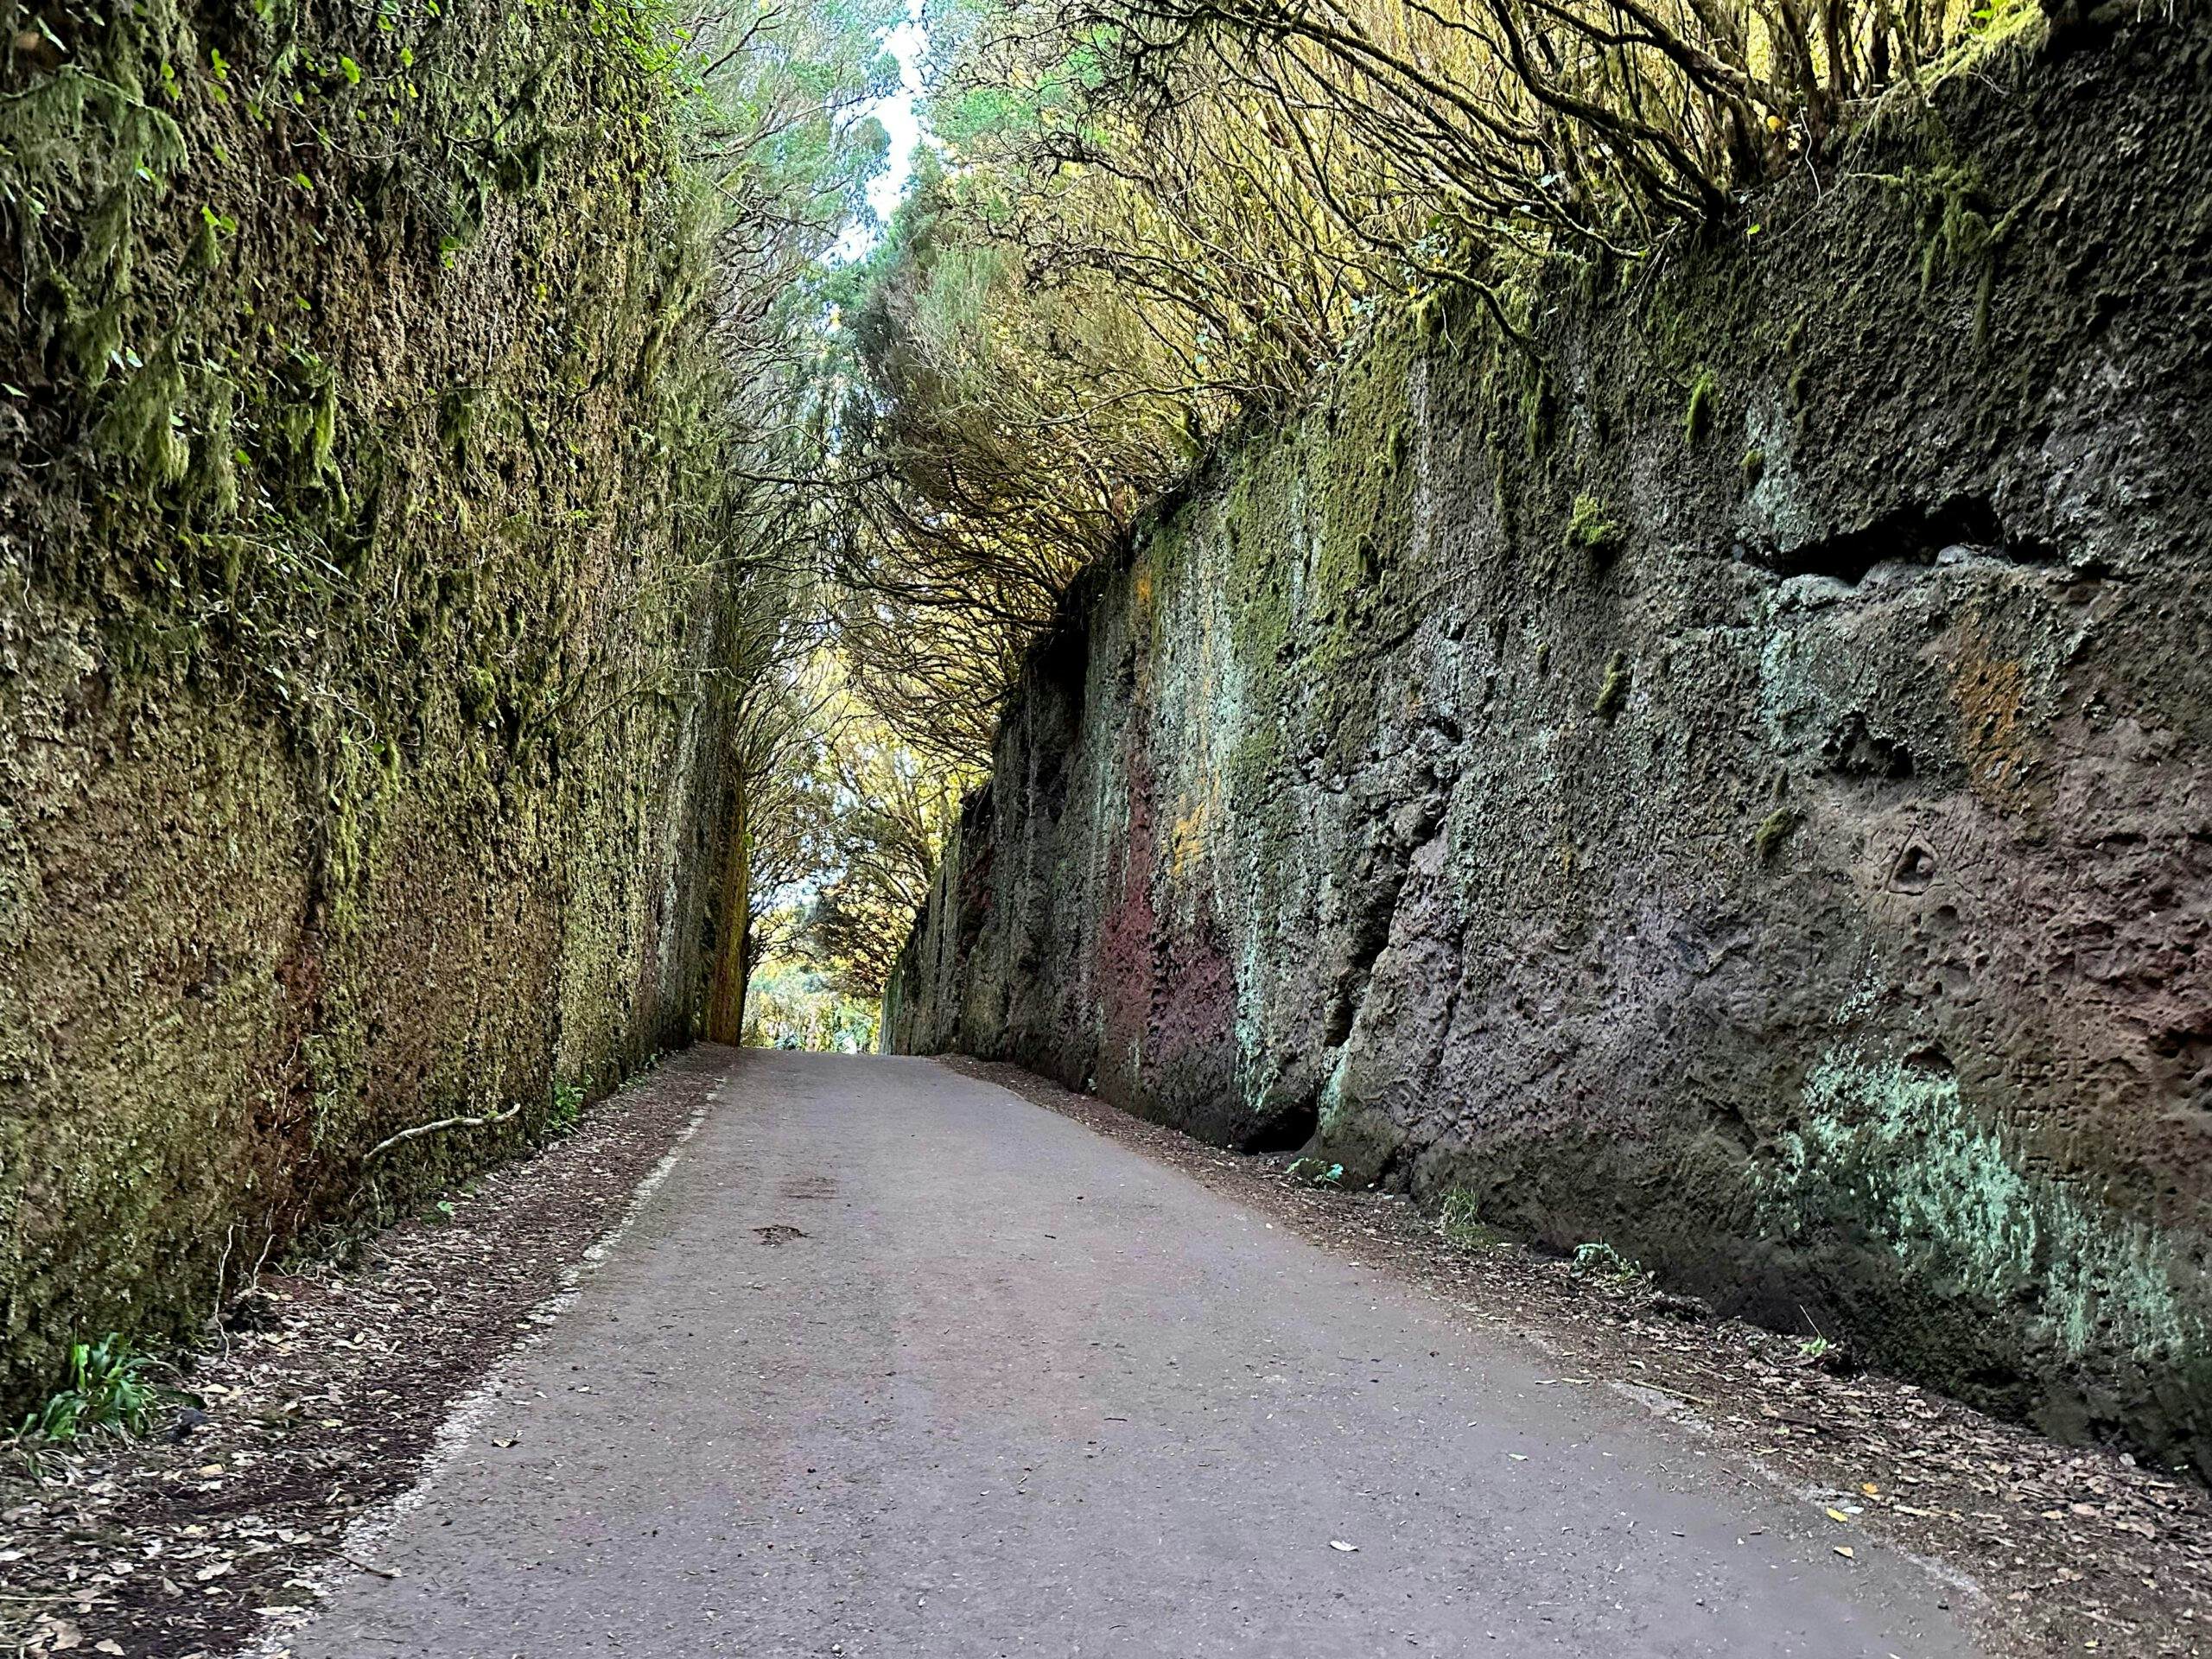 Antiguo camino elevado como parte de la ruta de senderismo cerca del Pico Inglés - hoy un lugar ideal para sesiones fotográficas